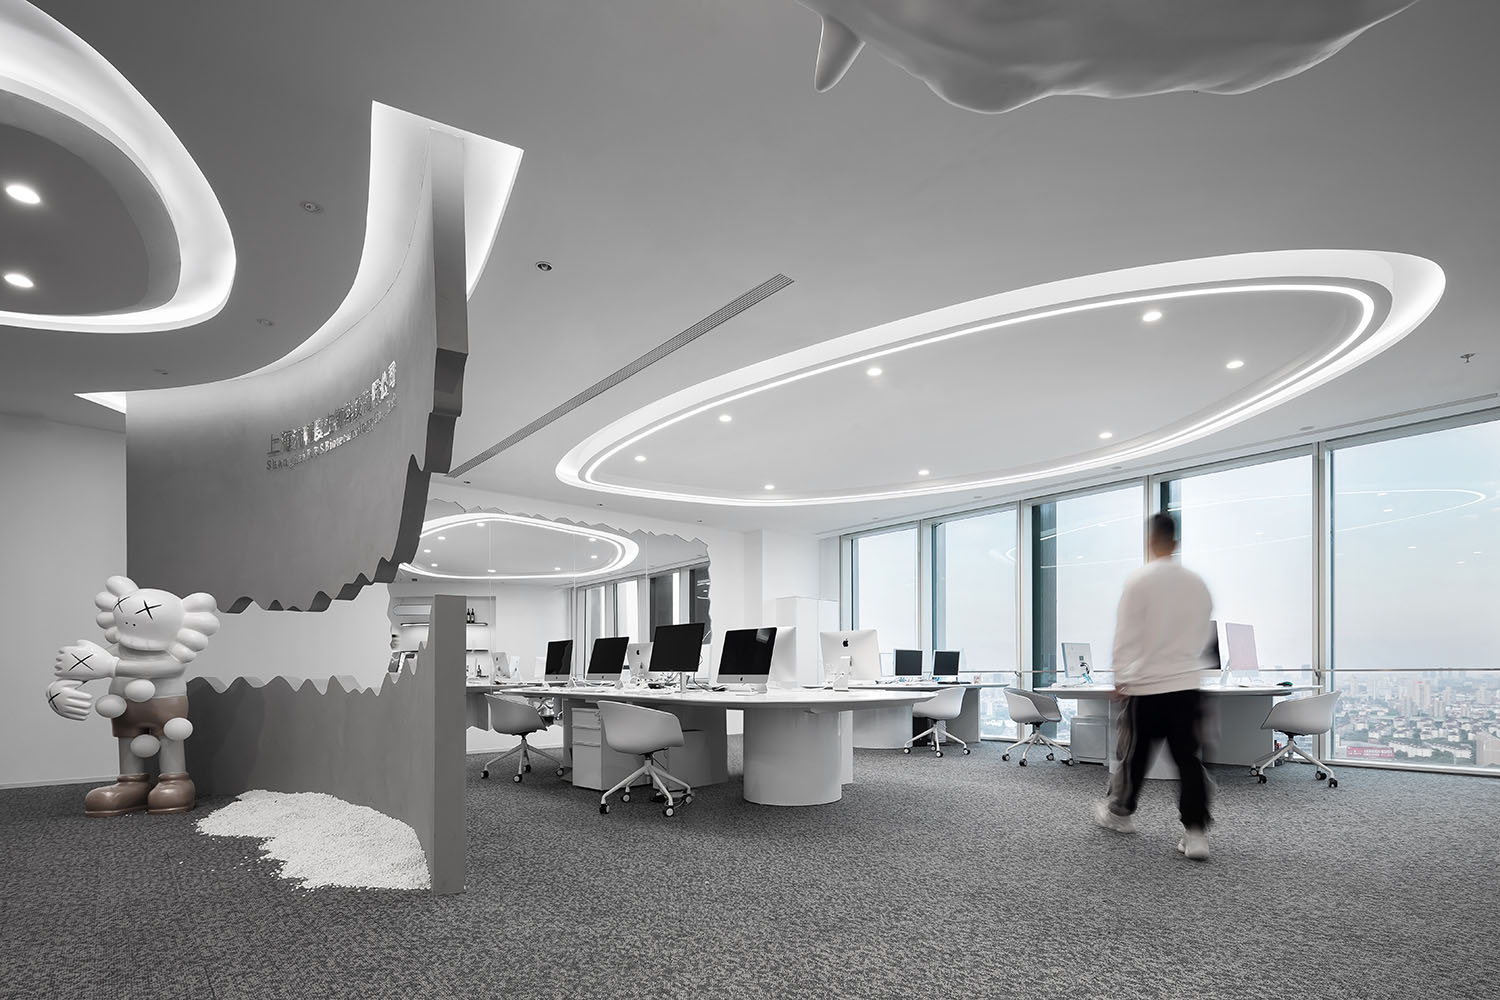 办公室设计,办公空间设计,上海办公室设计,办公室设计案例,科技公司办公室设计,开放式办公室设计,开放式办公室设计案例,原一空间设计,原一空间